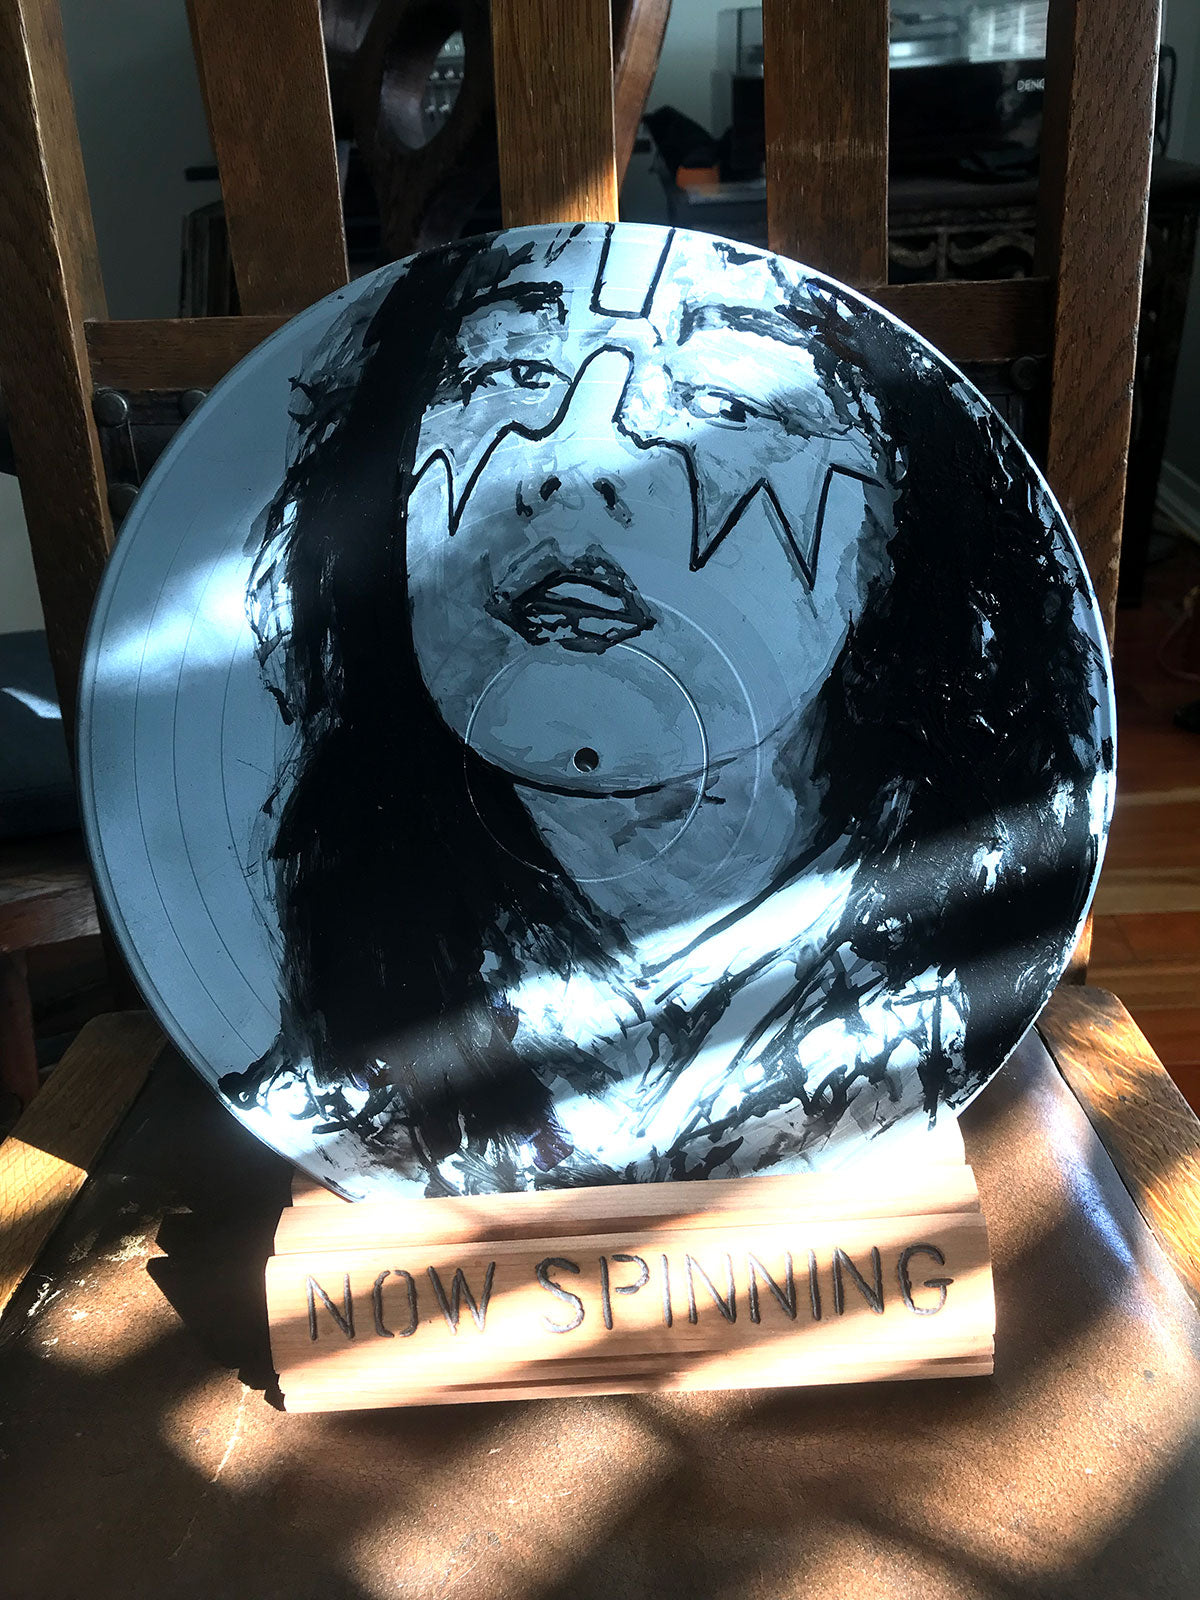 Vinyl Rock Art - Ace Frehley